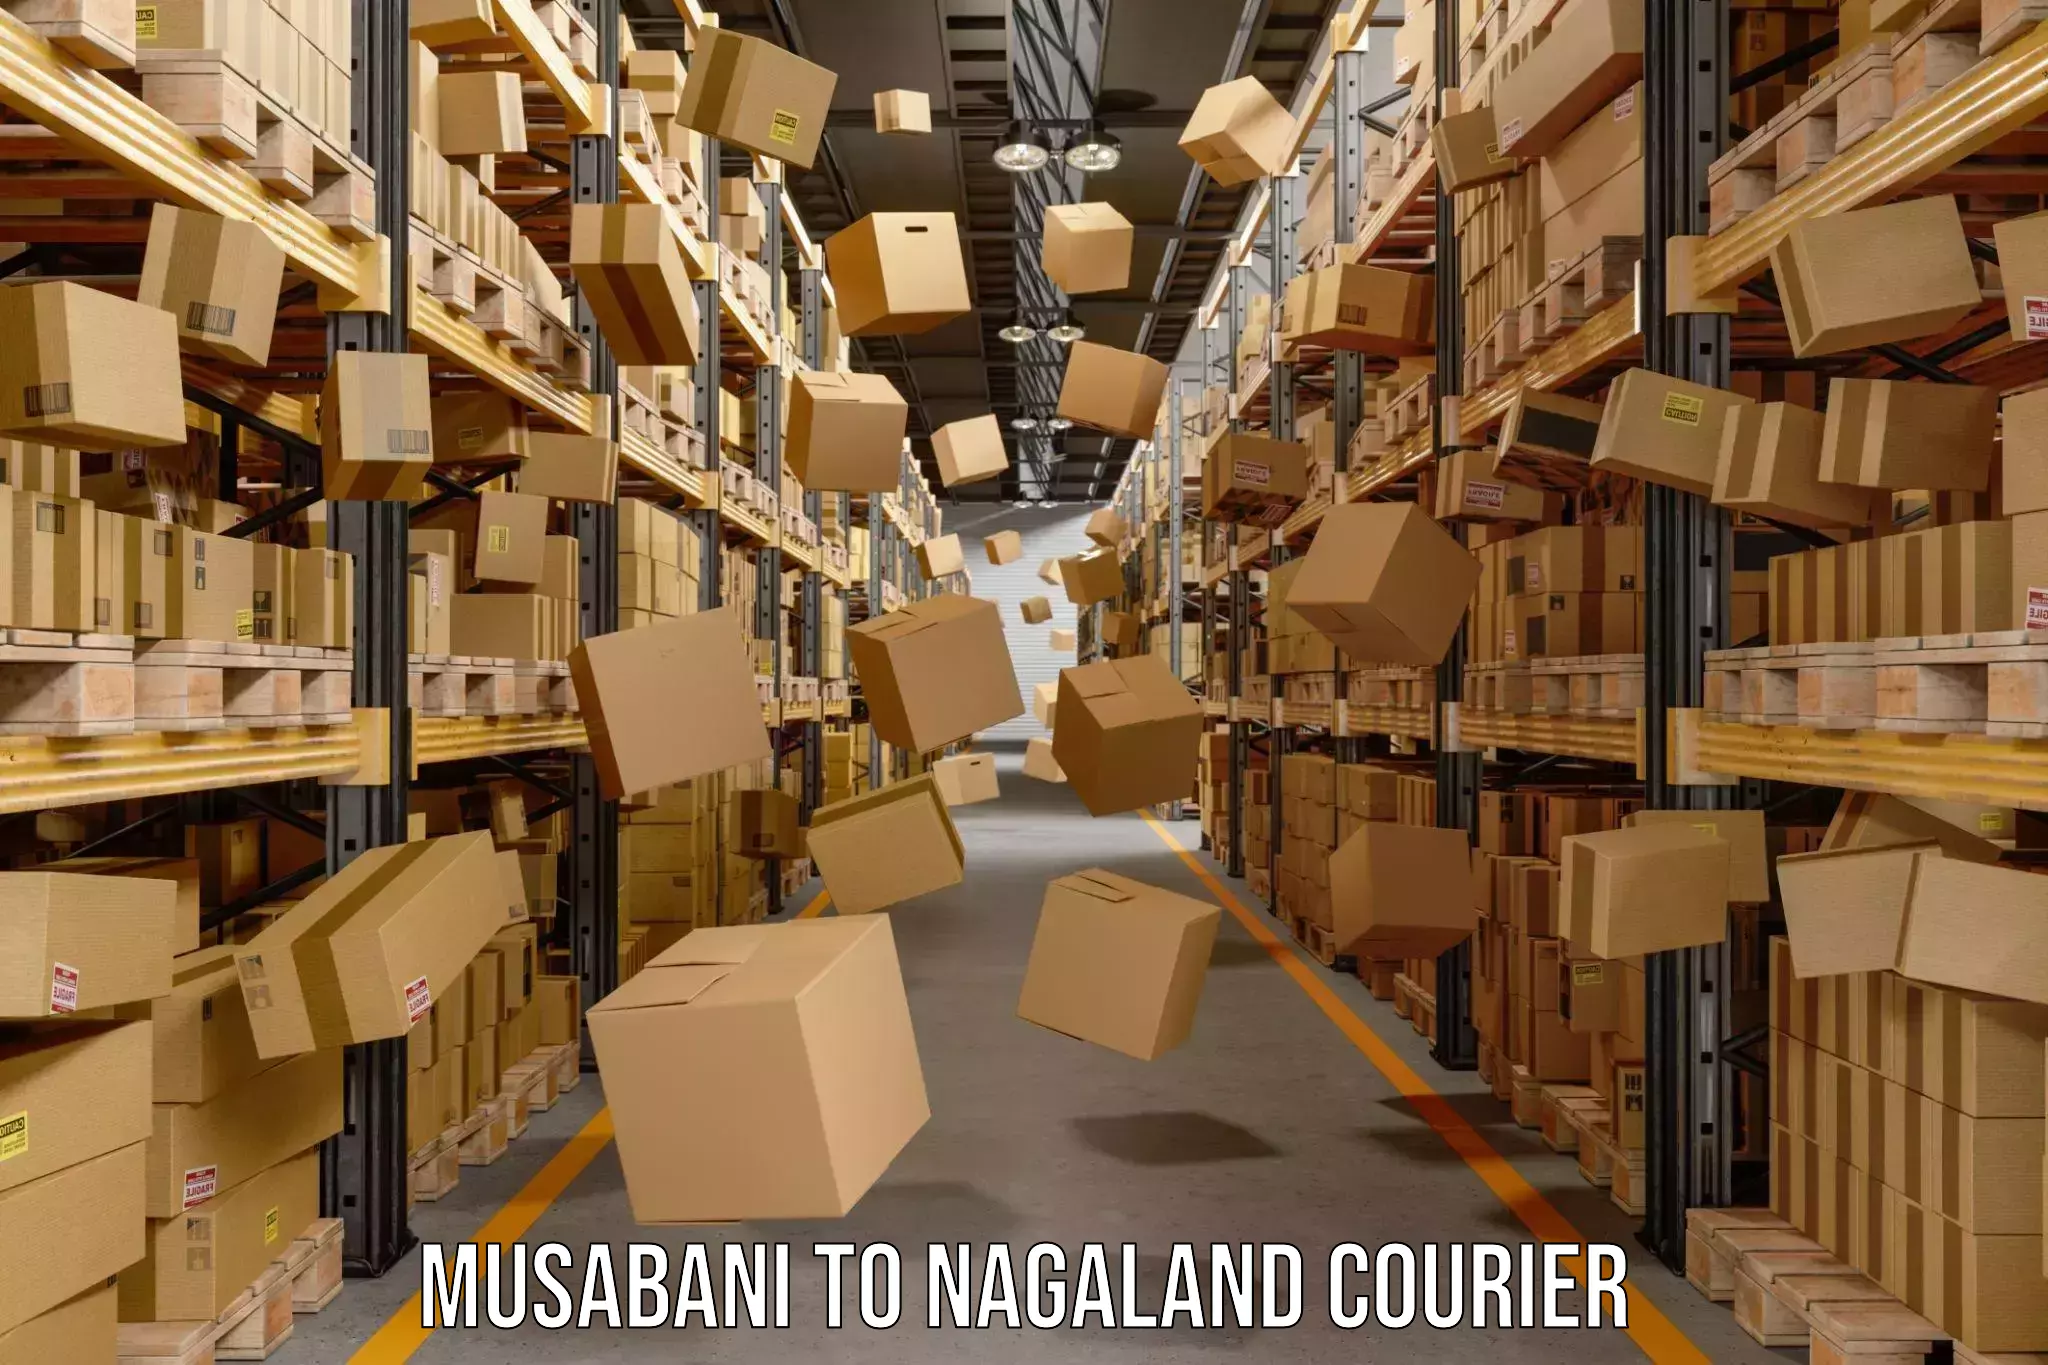 Global courier networks Musabani to Kohima